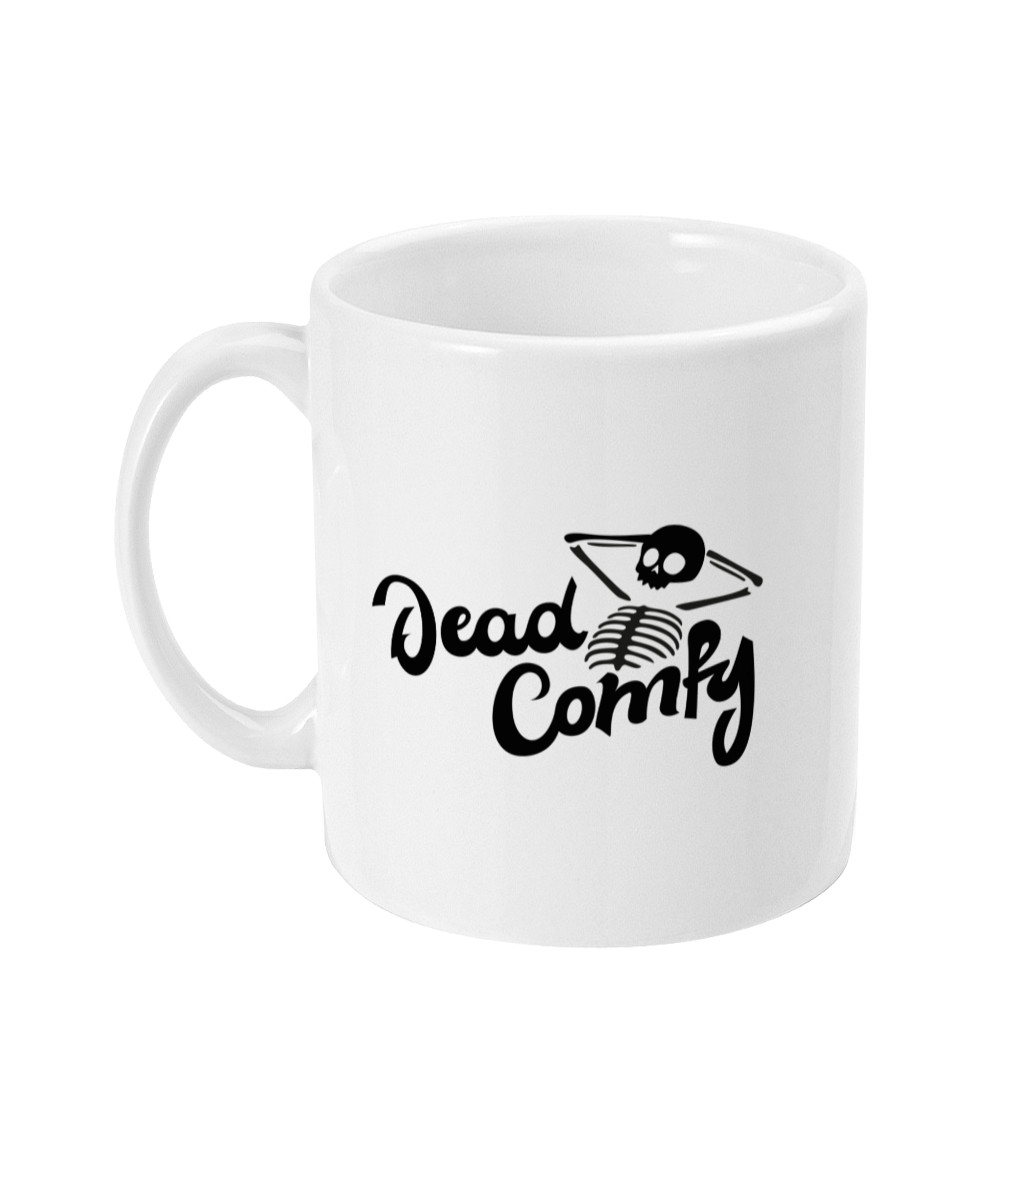 Dead Comfy – Ceramic Mug